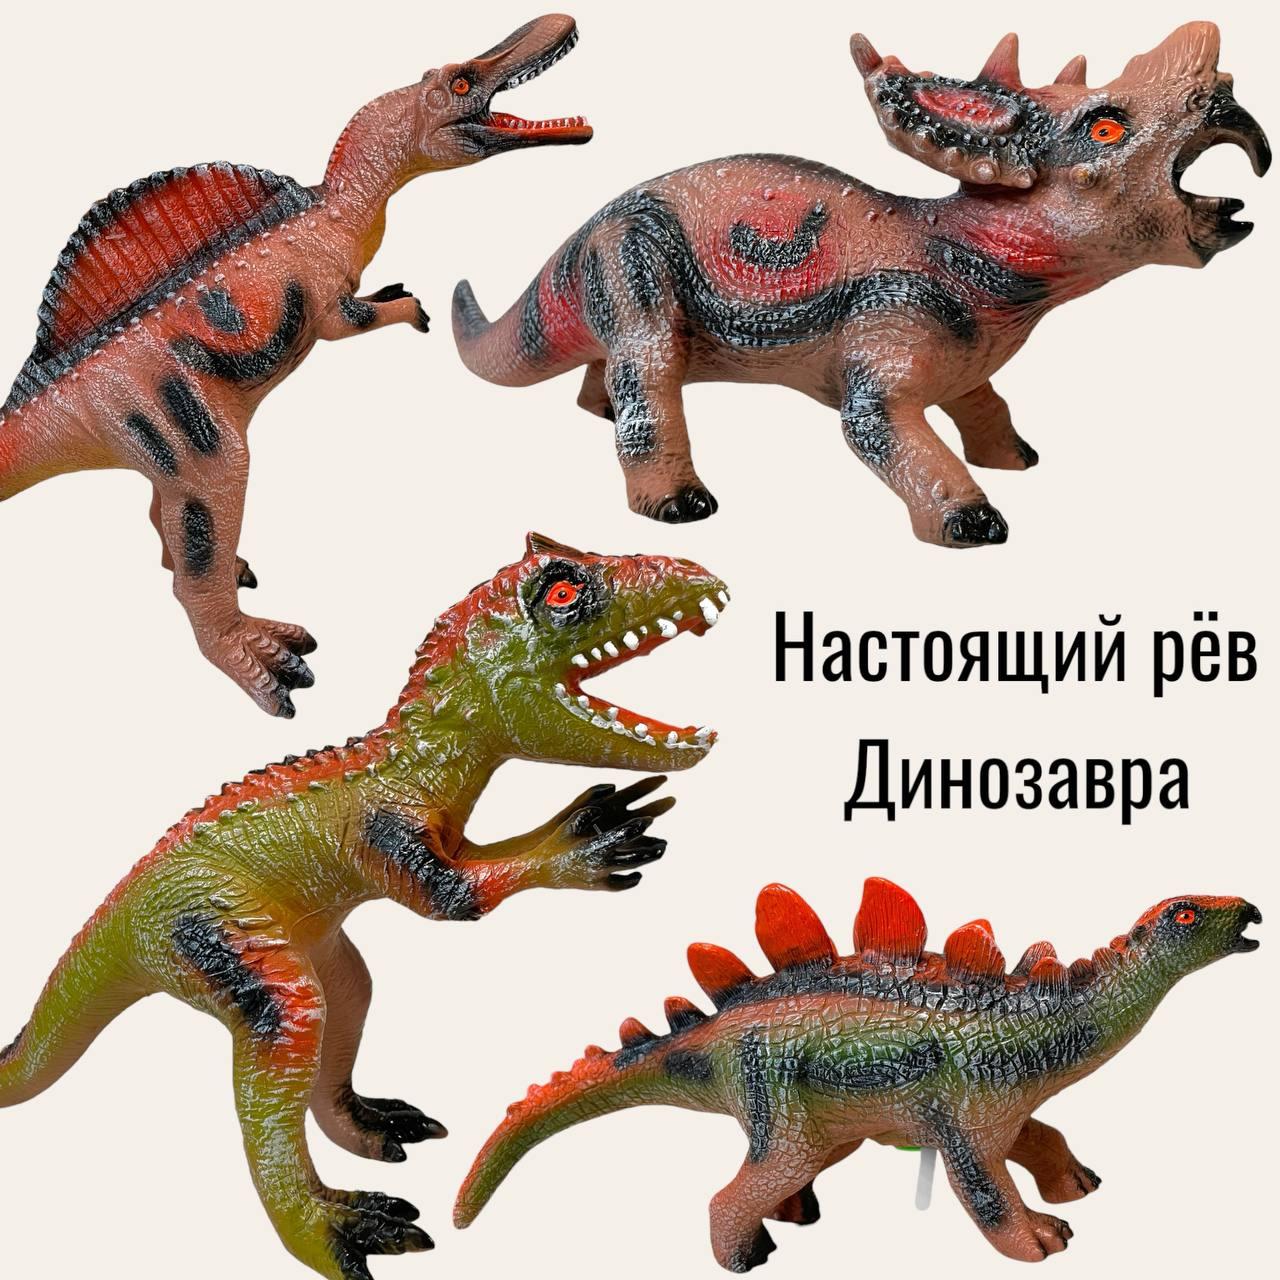 017-6 Динозавр резиновый качественный с звуком 6 видов, цена  за 1шт 30*21см, фото 1